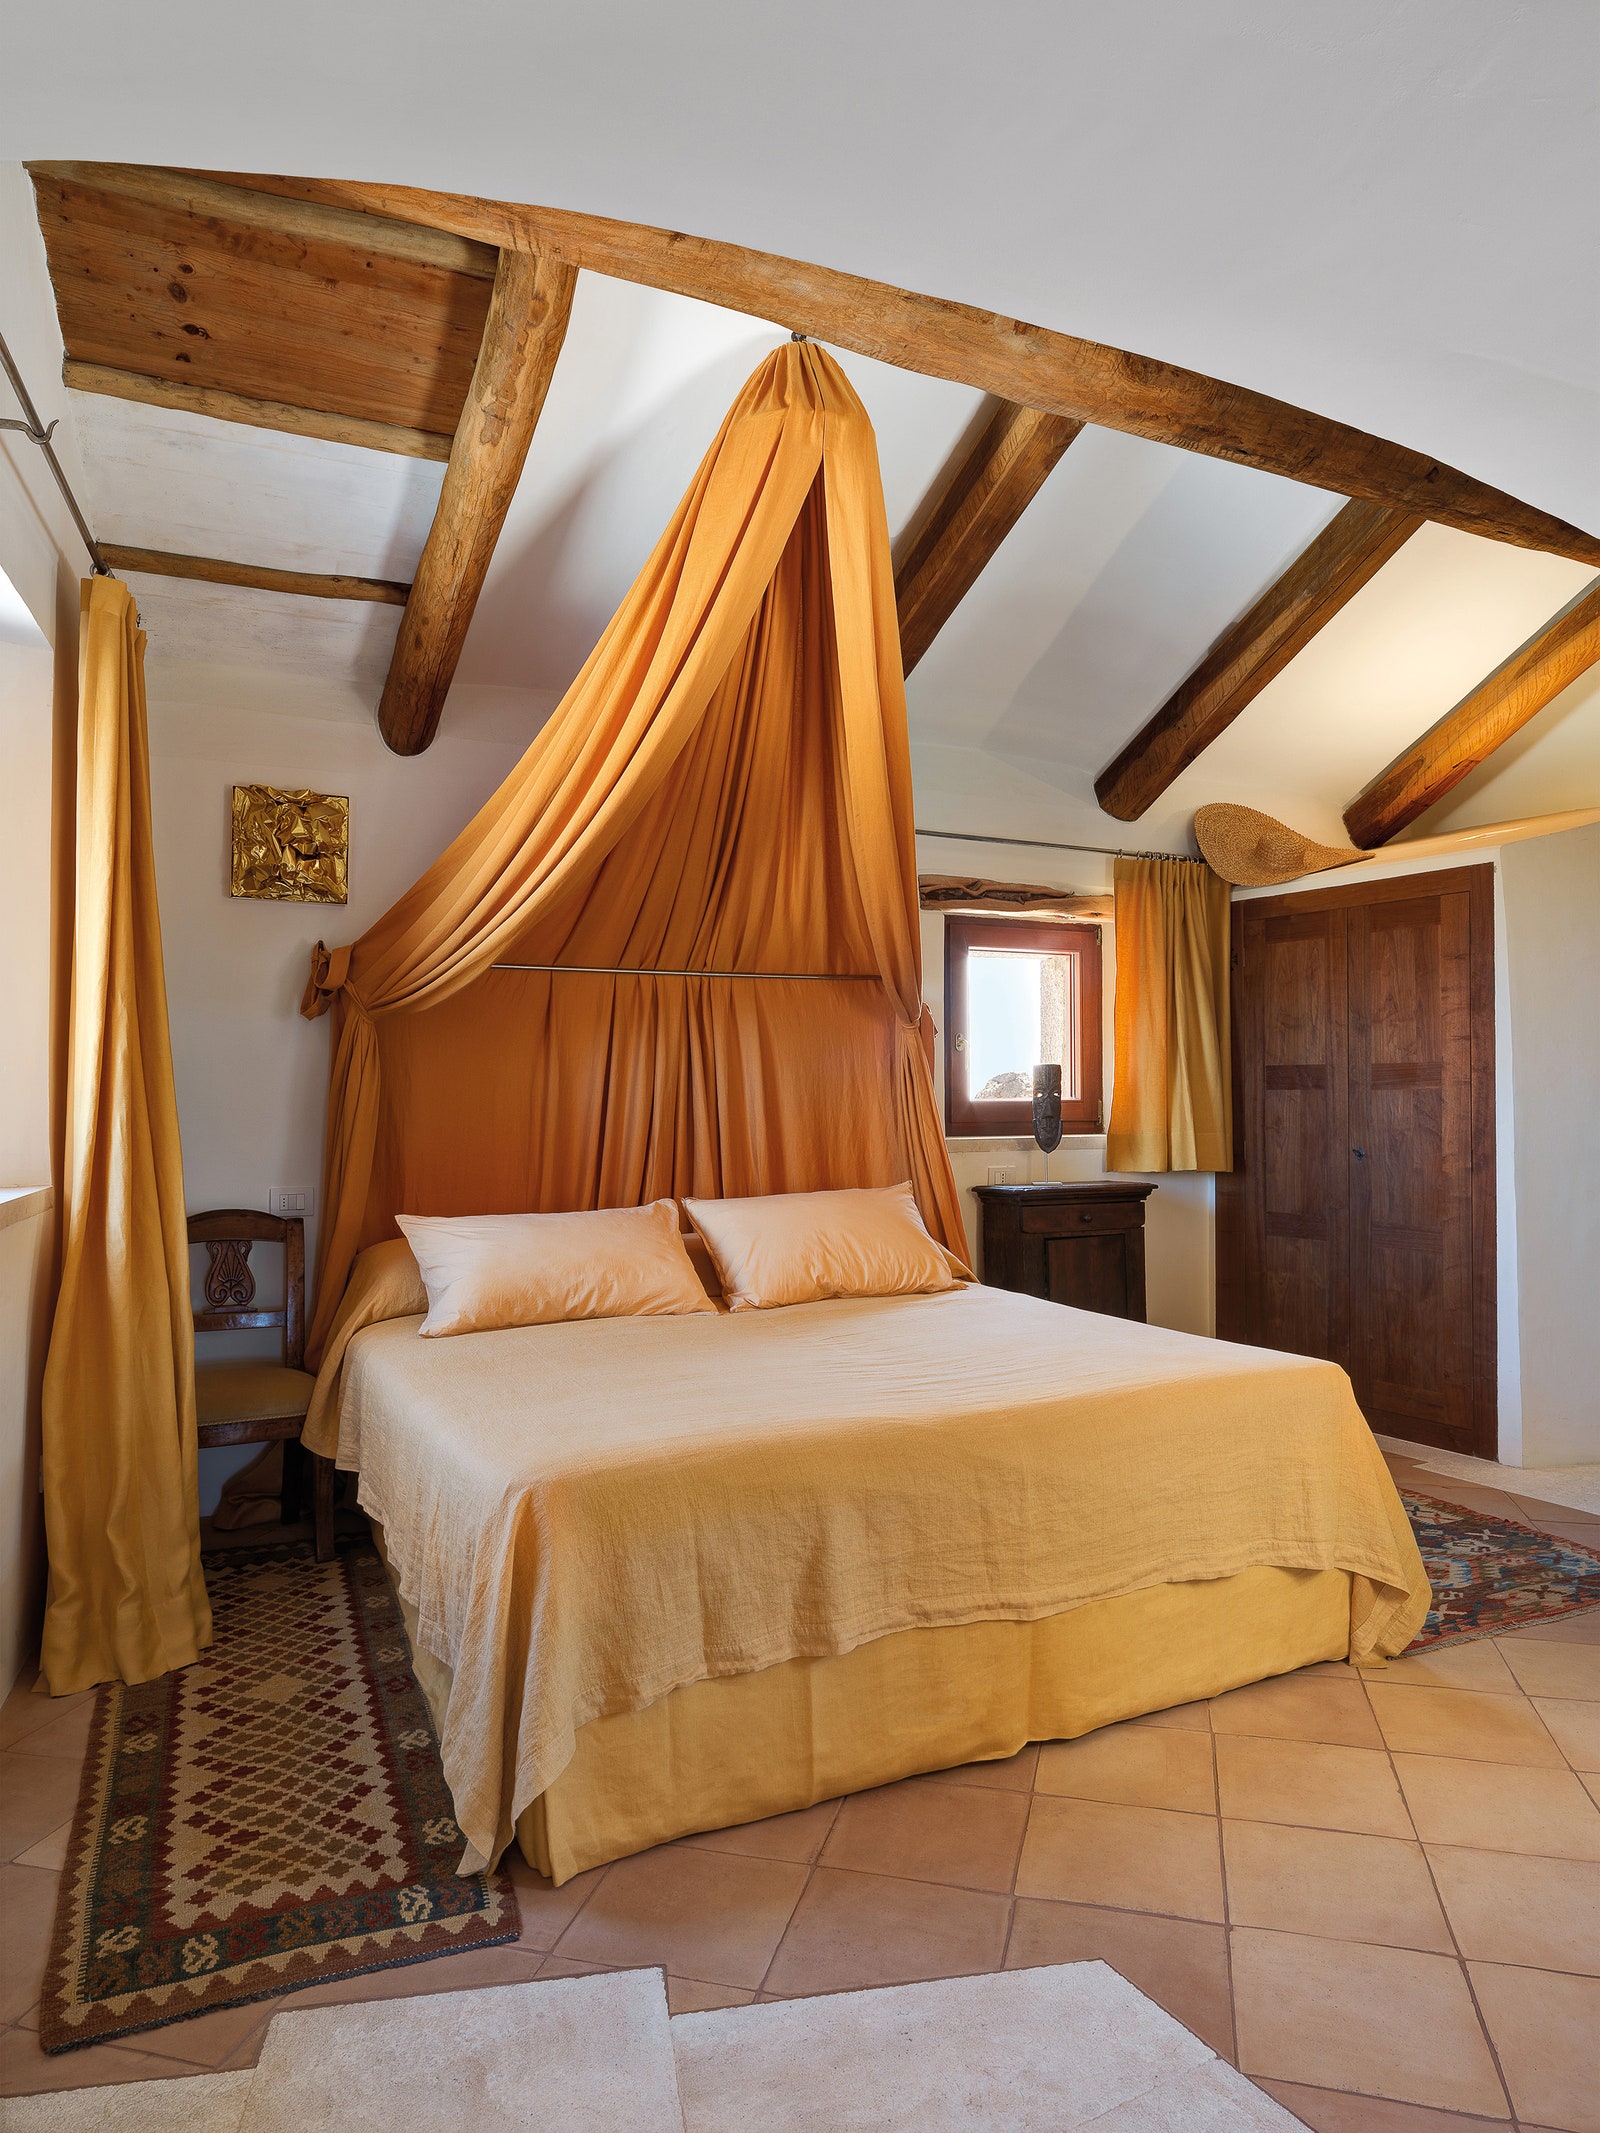 Несколько ступеней ведут из гостиной в главную спальню с кроватью под балдахином из льняной ткани цвета охры.